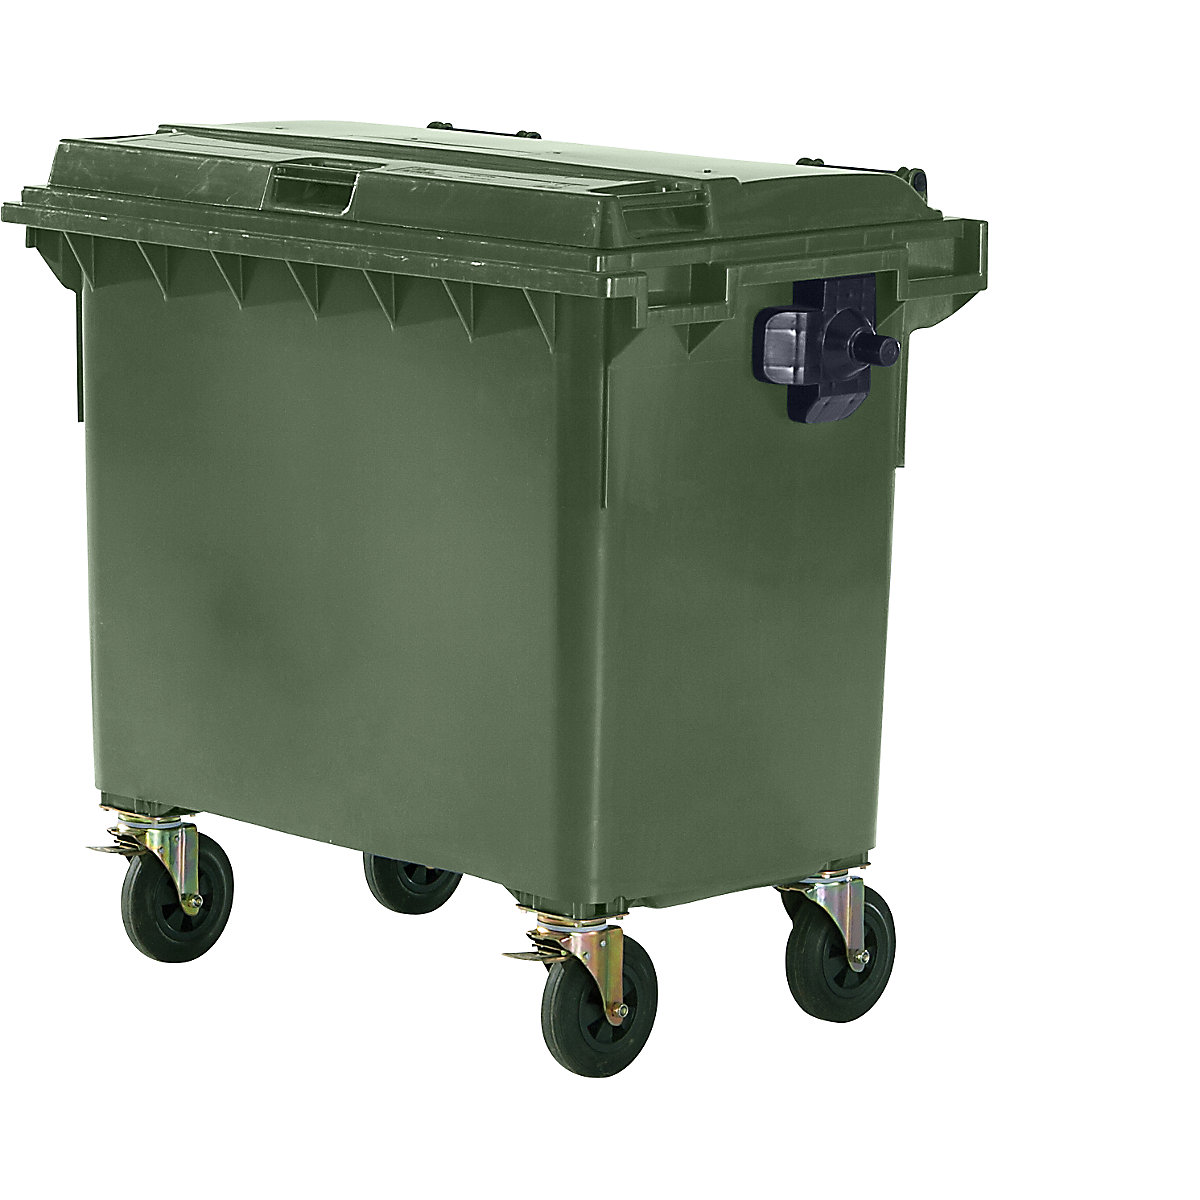 Contentor do lixo em plástico, DIN EN 840, volume 660 l, LxAxP 1360 x 1235 x 765 mm, verde-6